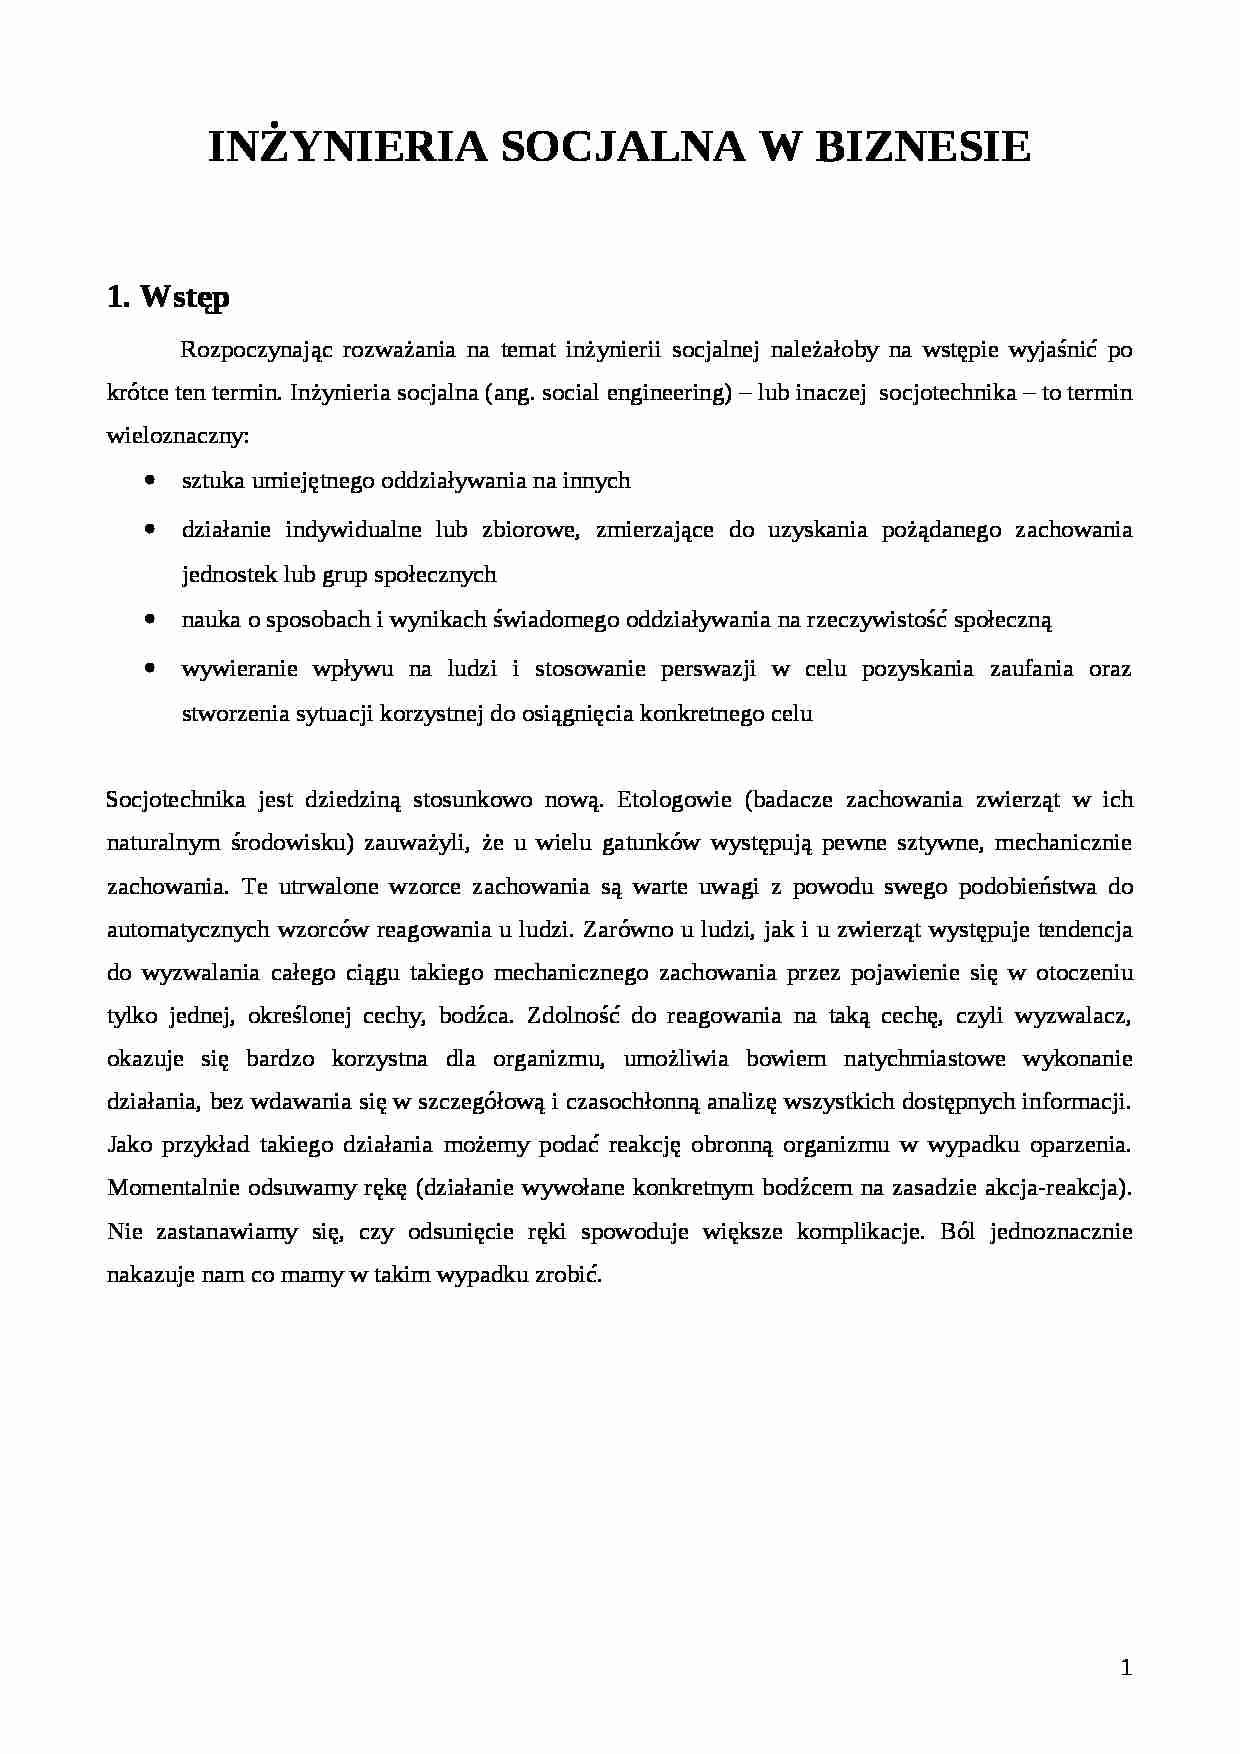 Inżynieria socjalna w biznesie - wykład - strona 1